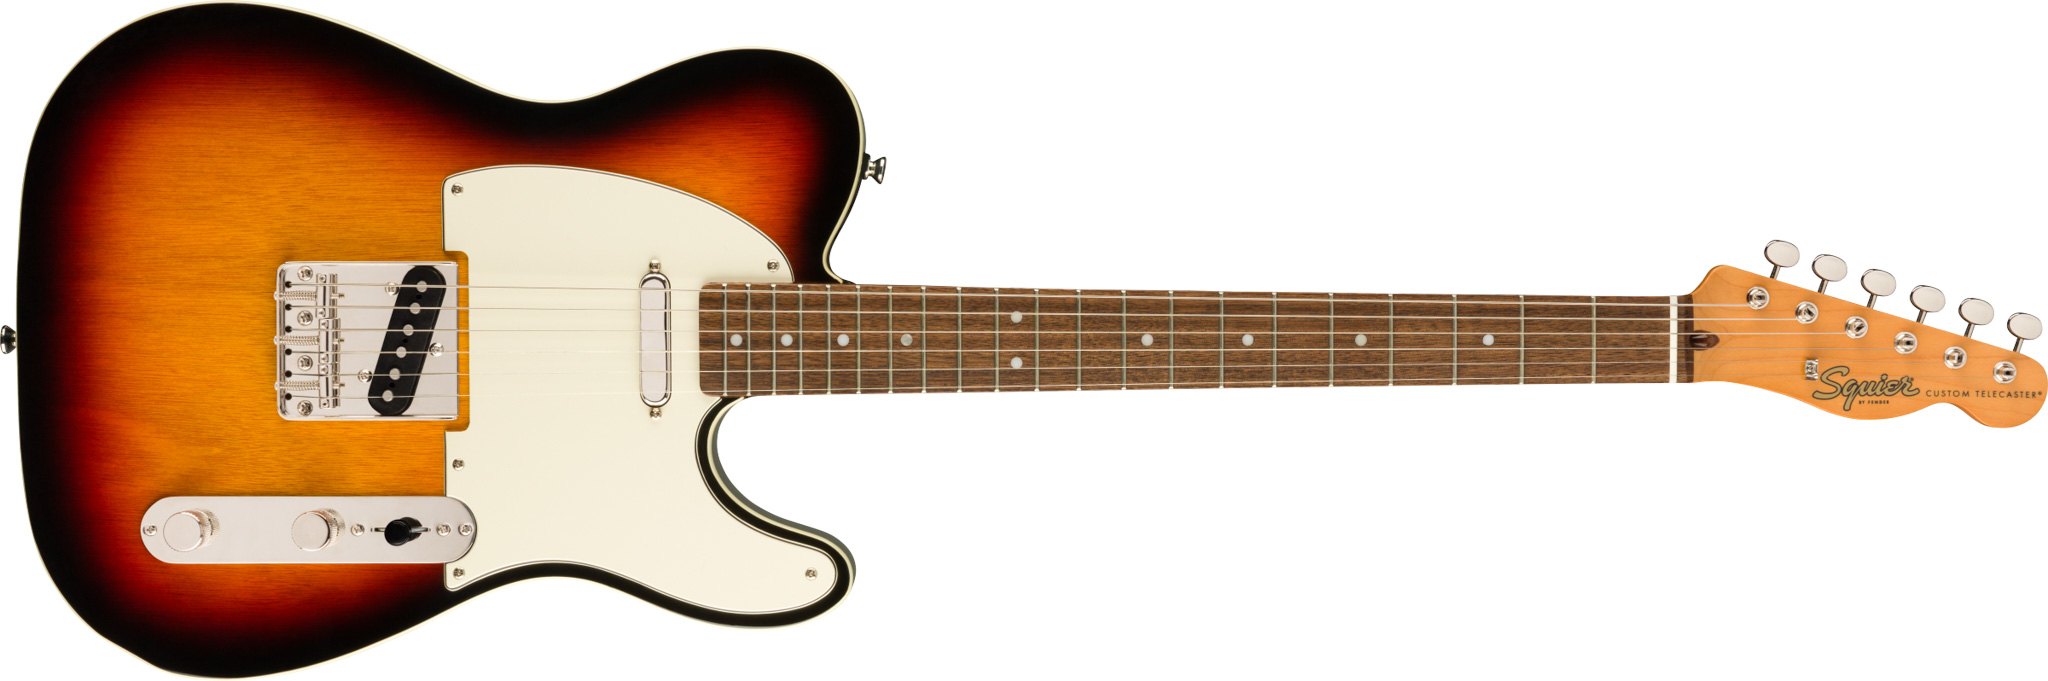 Fender Squier Classic Vibe '60s Custom Telecaster elektrisk gitar